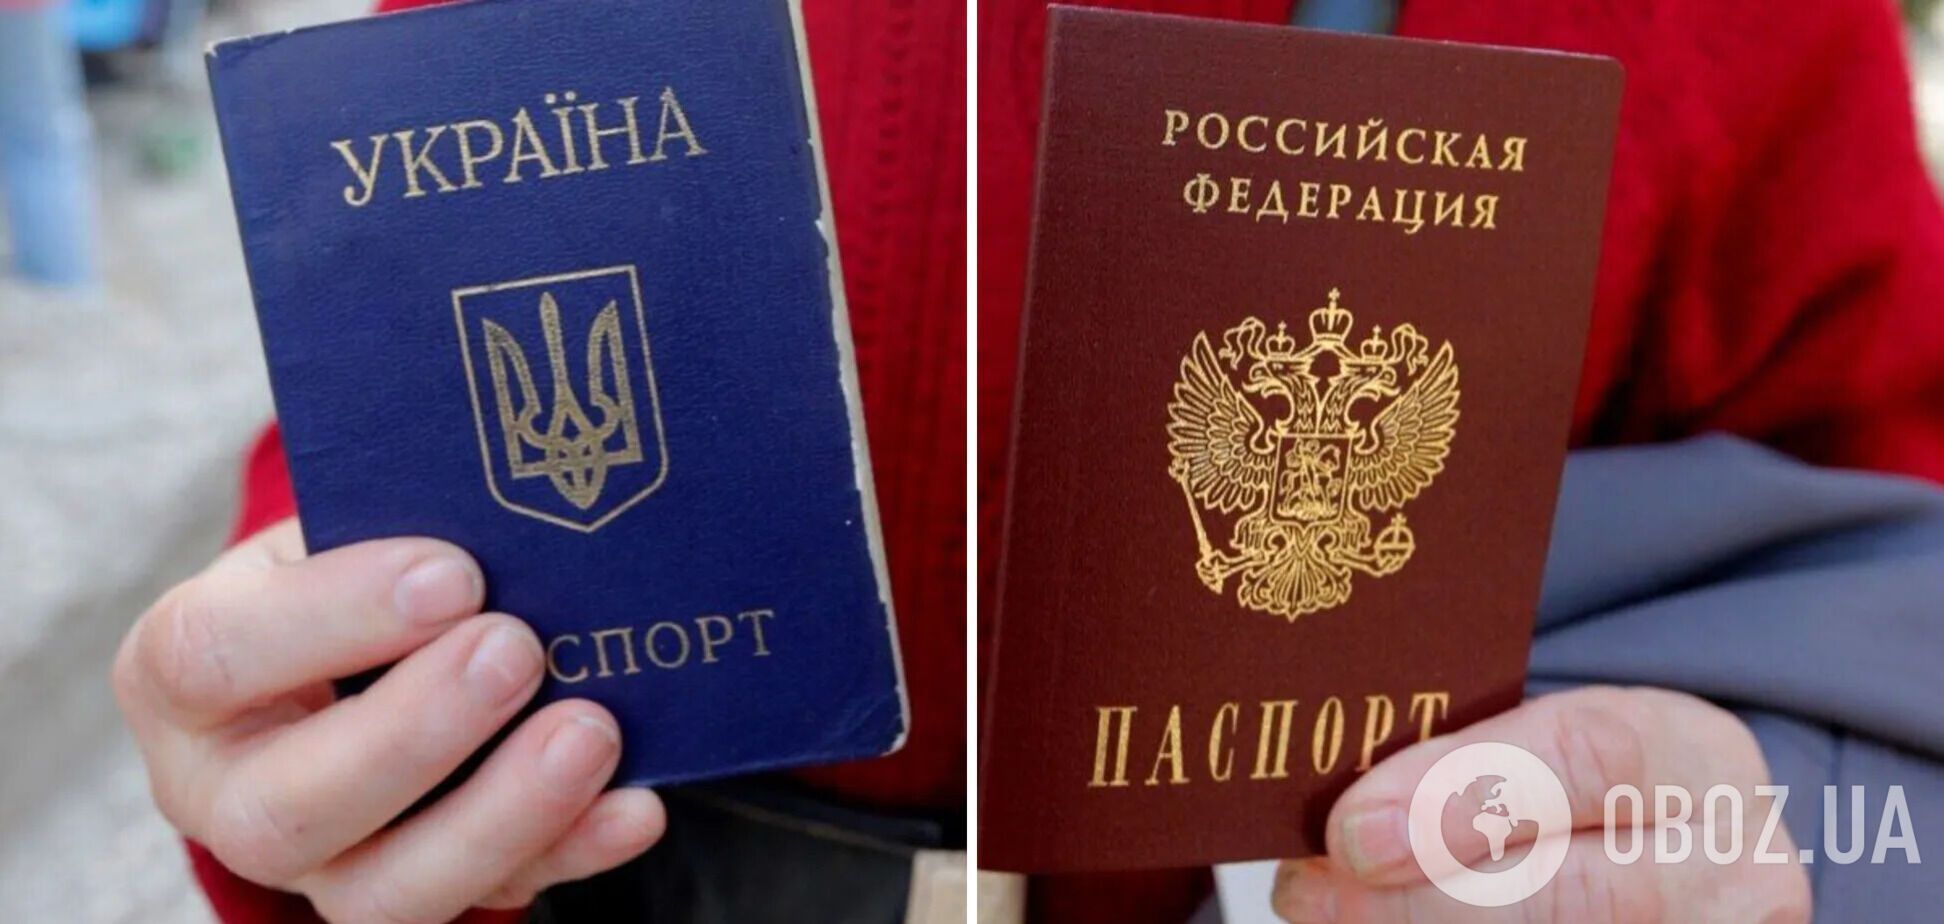 Ми втрачаємо своїх дітей не для того, щоб сміття з нашими паспортами заполонило Україну